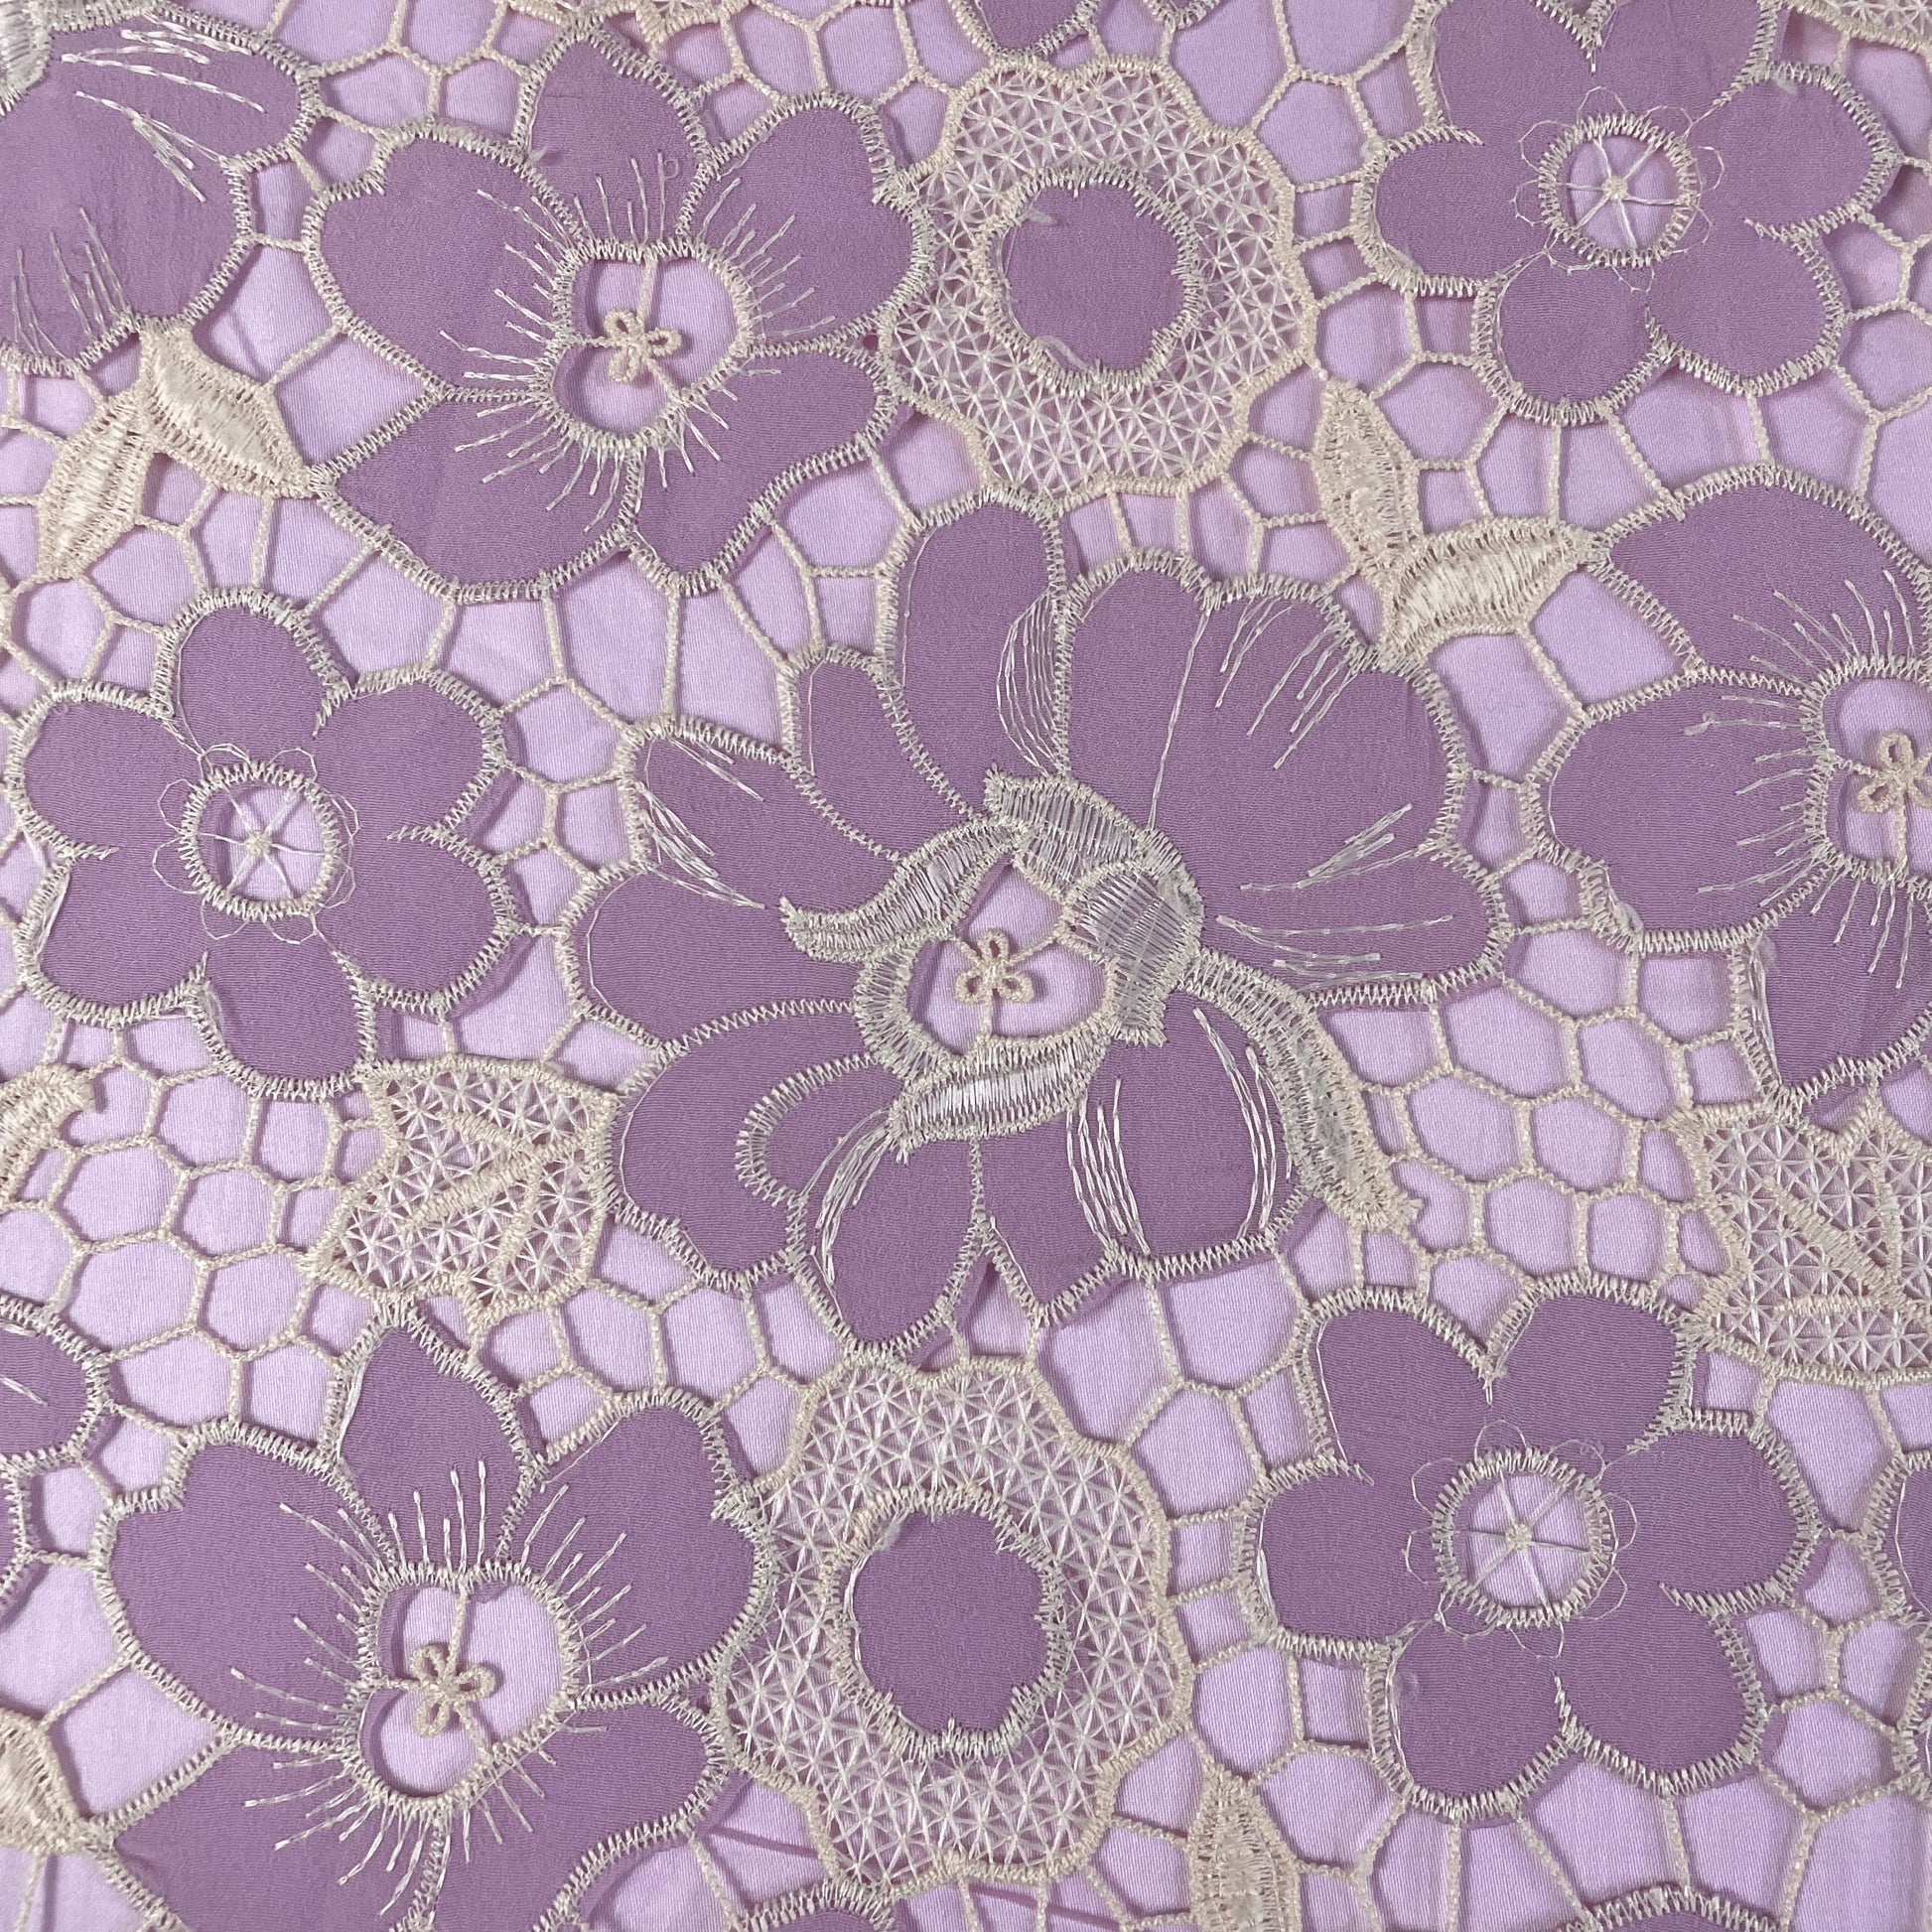 Premium Purple Floral Fabric Crepe Croshet Fabric